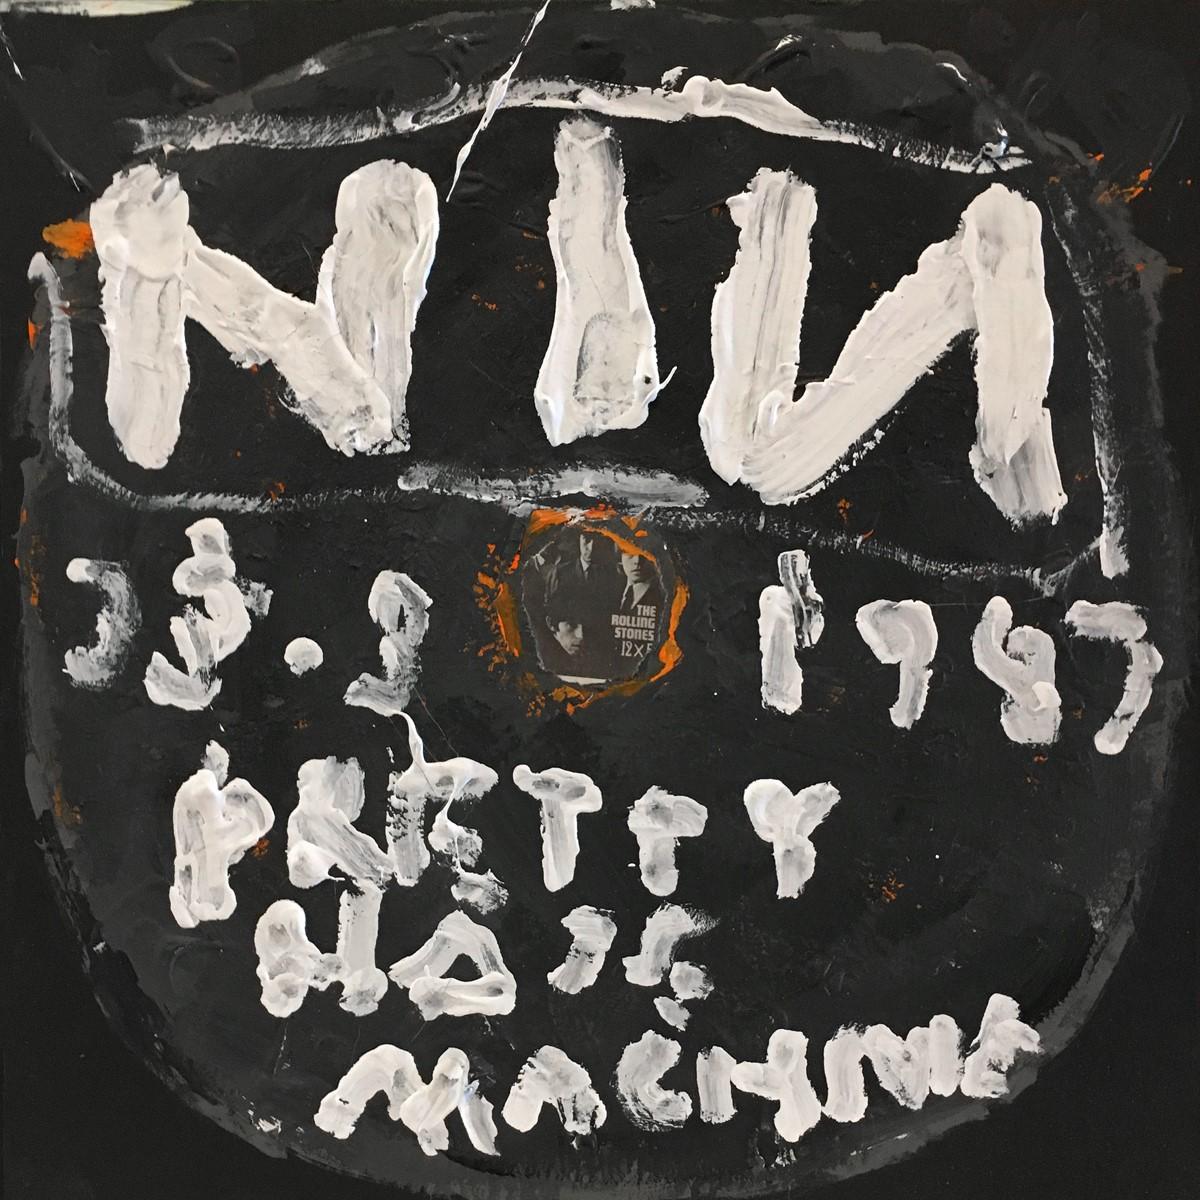 Nine Inch Nails - Pretty Hate Machine (étiquette du disque, talons de billets, listes de concerts)